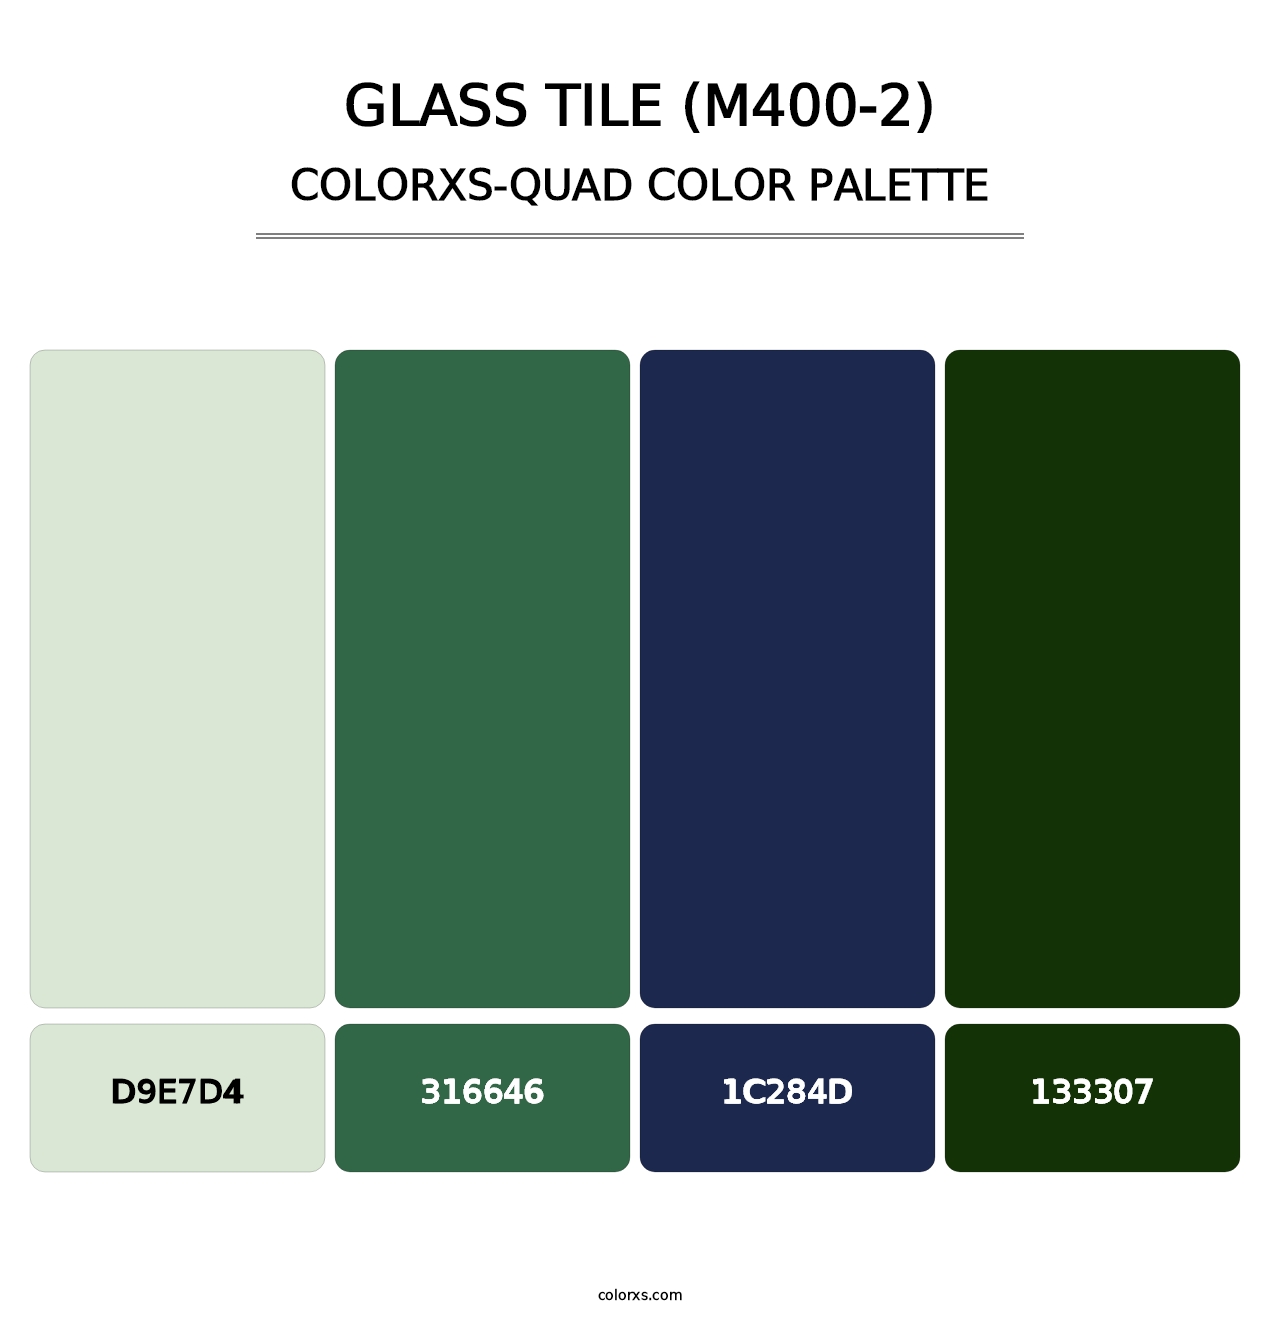 Glass Tile (M400-2) - Colorxs Quad Palette